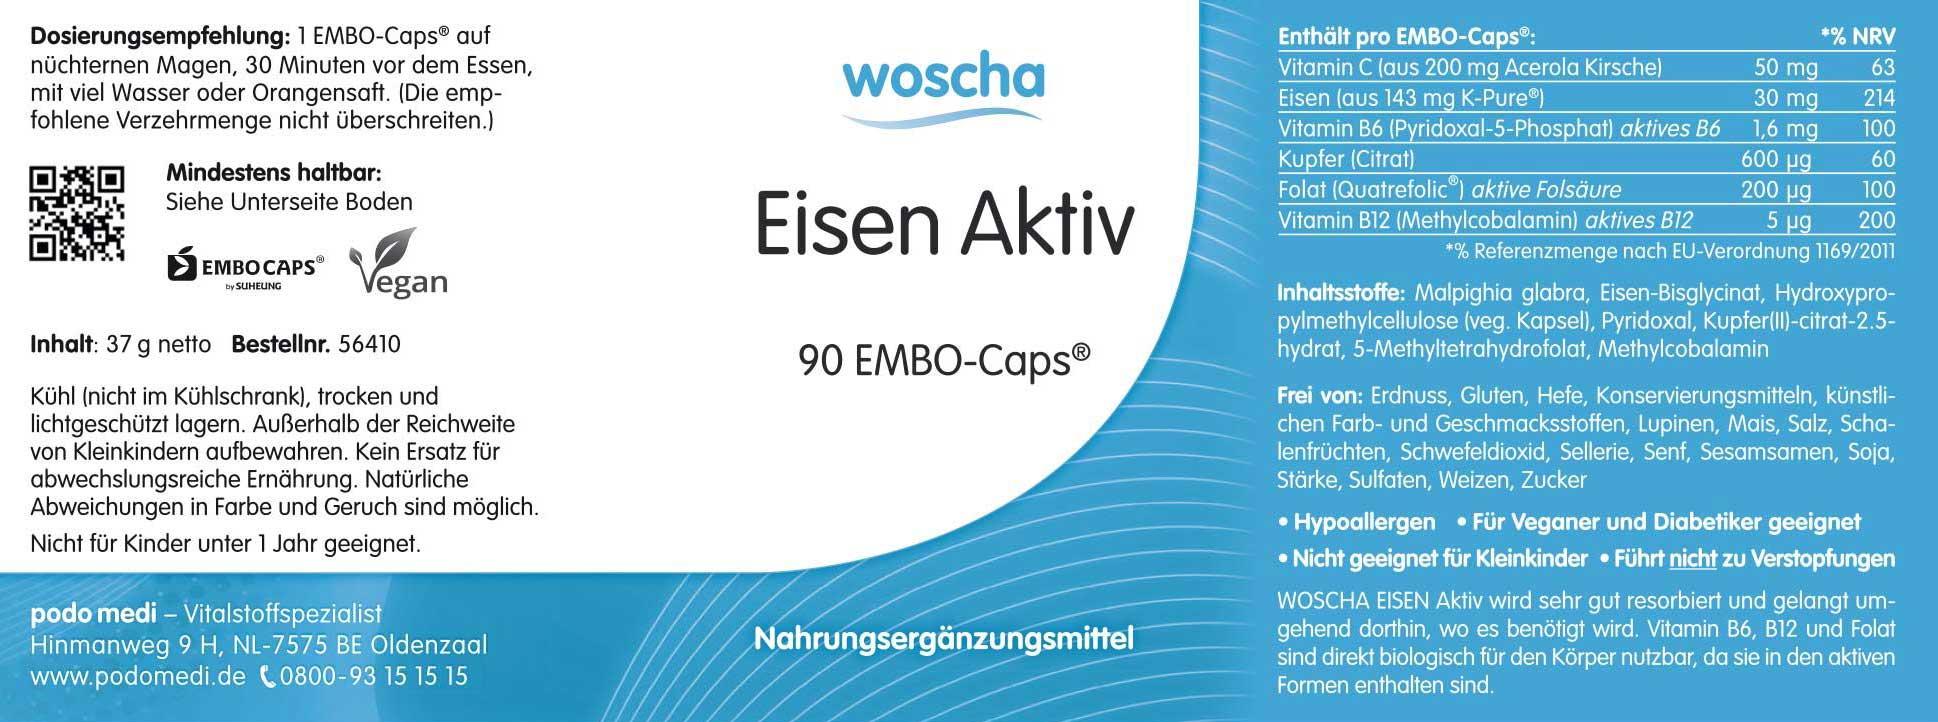 Woscha Eisen Aktiv Eisenchelate von podo medi beinhaltet 90 Kapseln Etikett